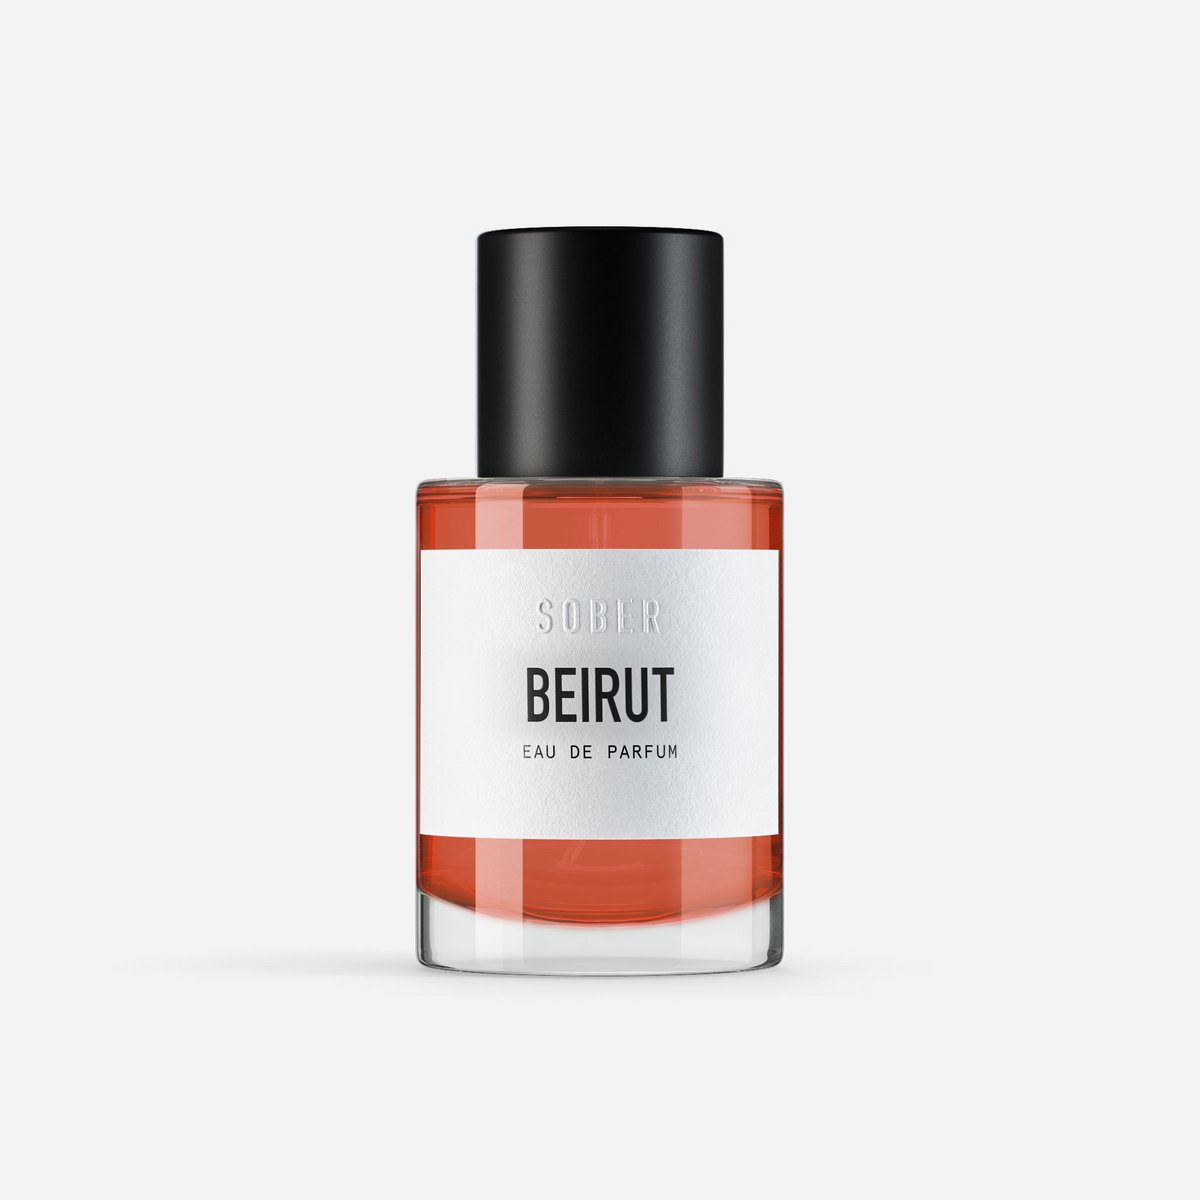 BEIRUT - Eau de Parfum